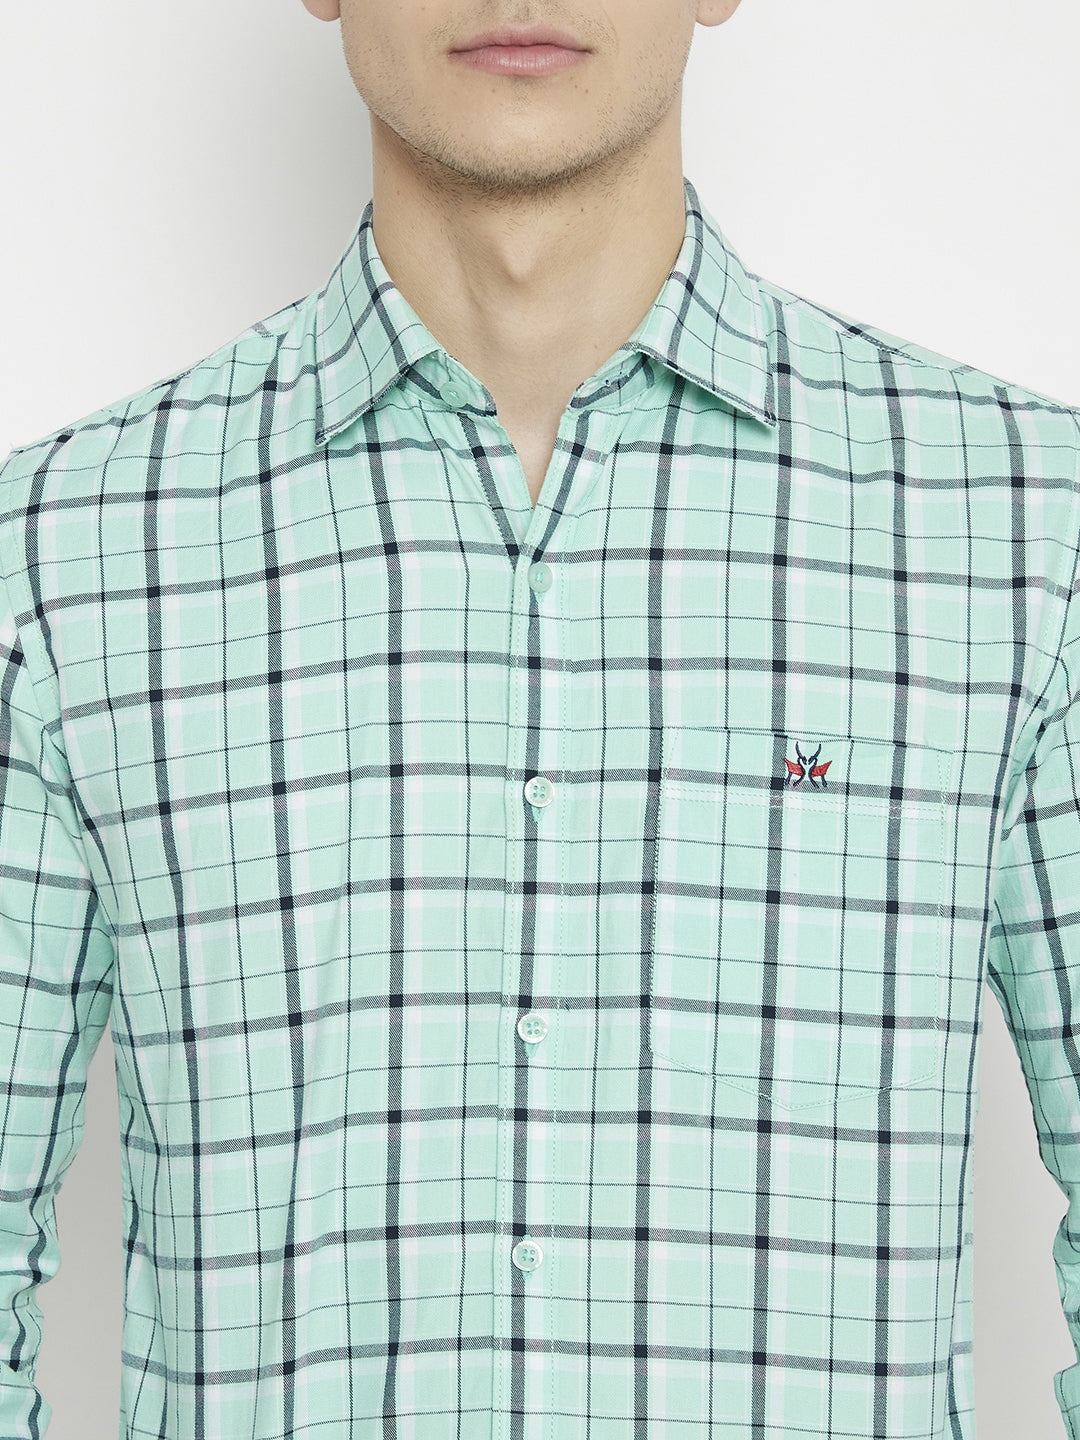 Mint Green Checked Slim Fit shirt - Men Shirts